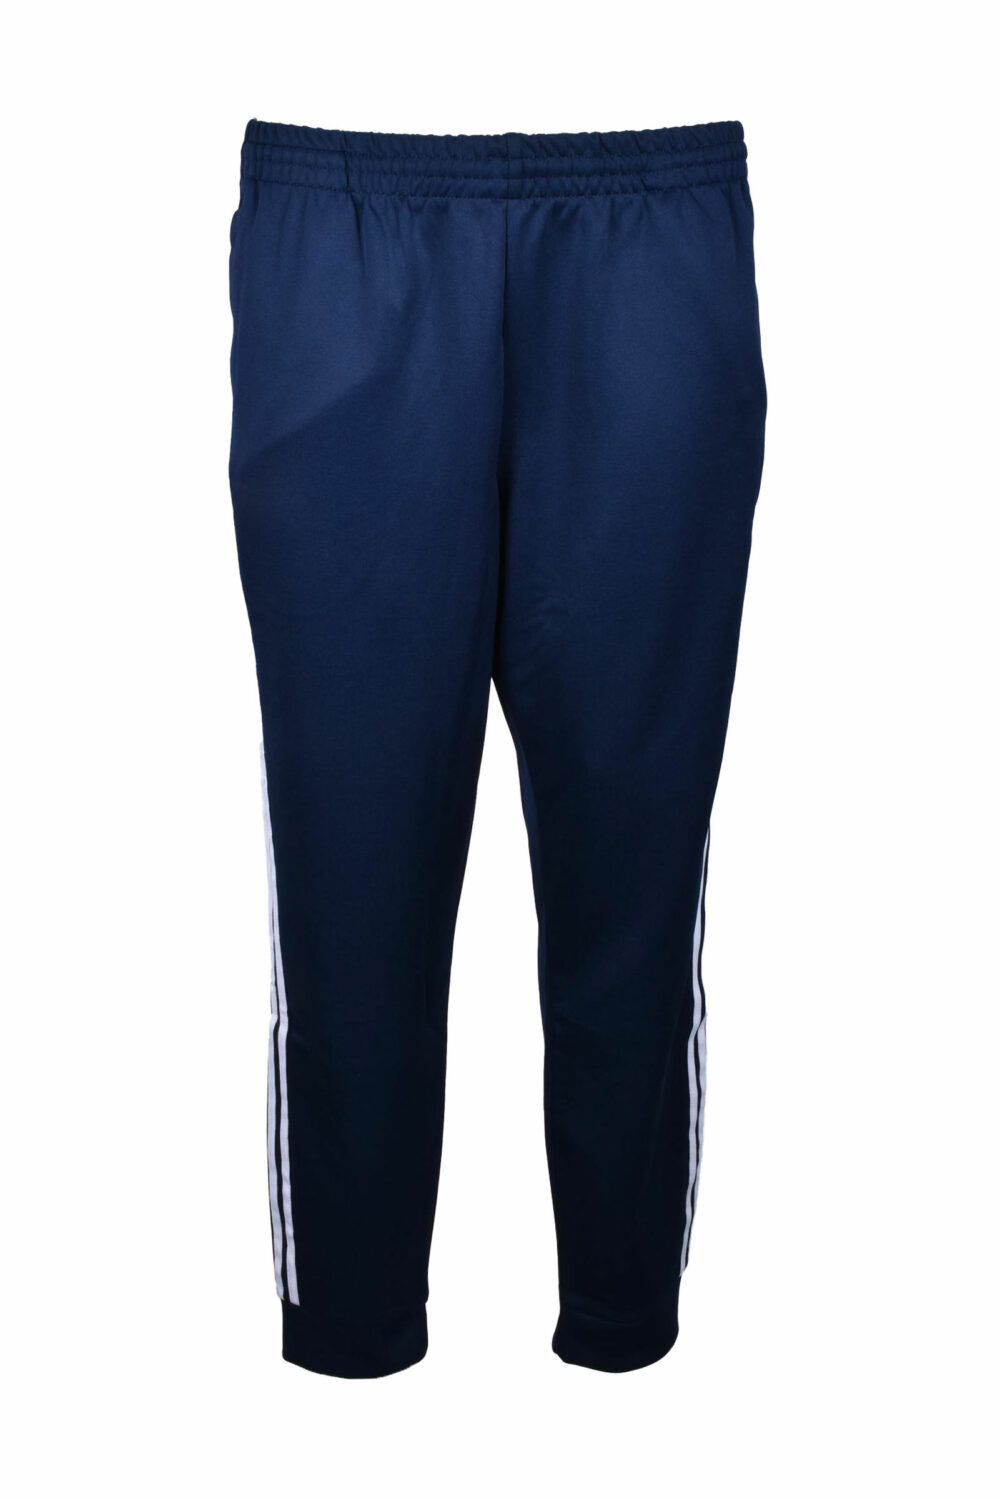 Pantaloni Adidas Blu - Foto 1